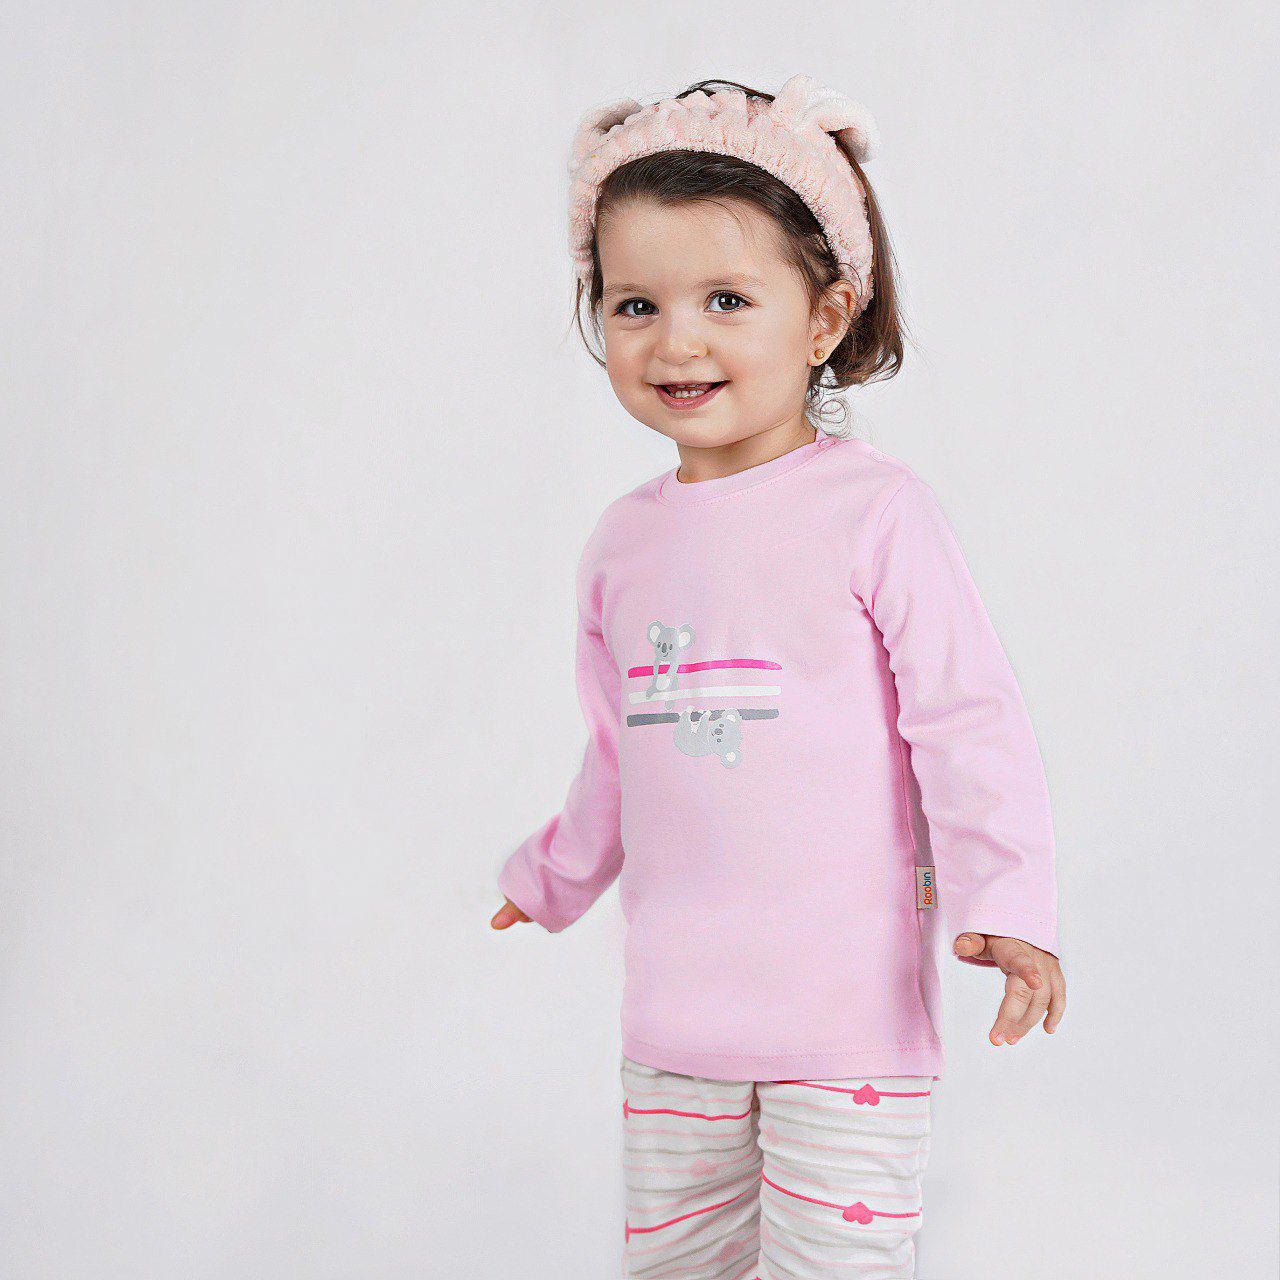 ست تی شرت و شلوار نوزادی روبین مدل کوالا رنگ صورتی -  - 4